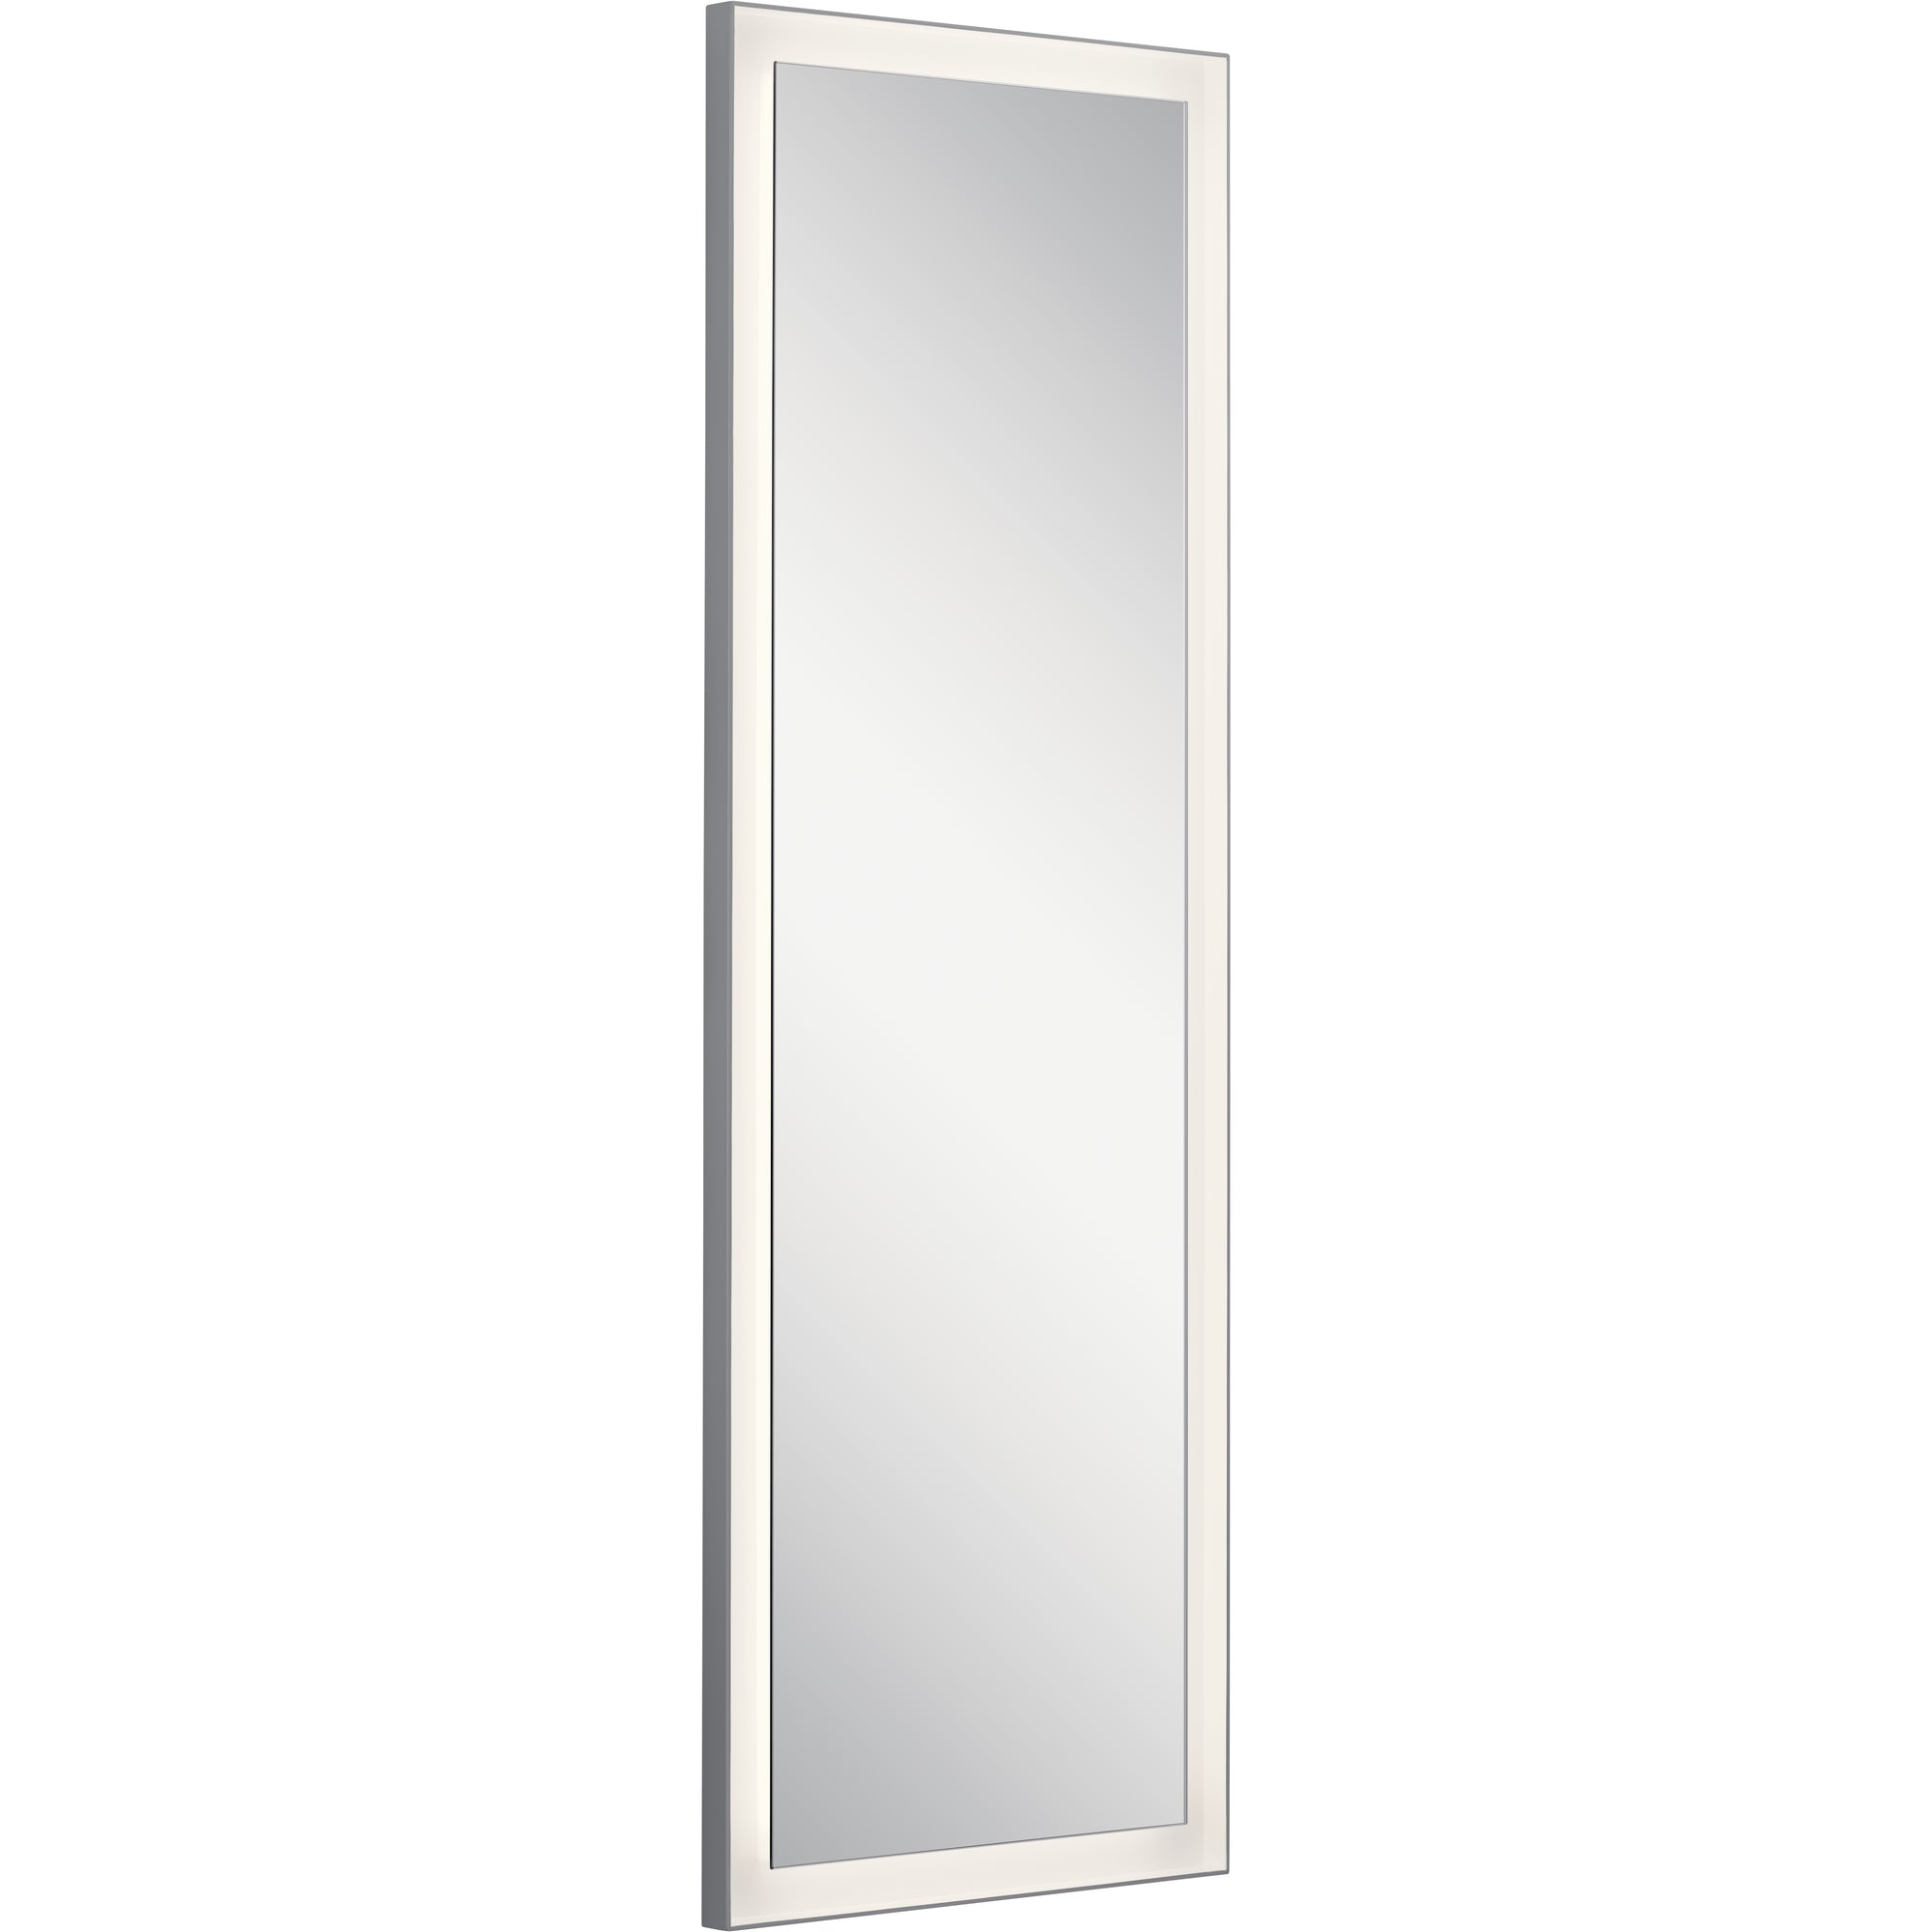 RYAME Lighting mirror Silver - 84174 | ELAN